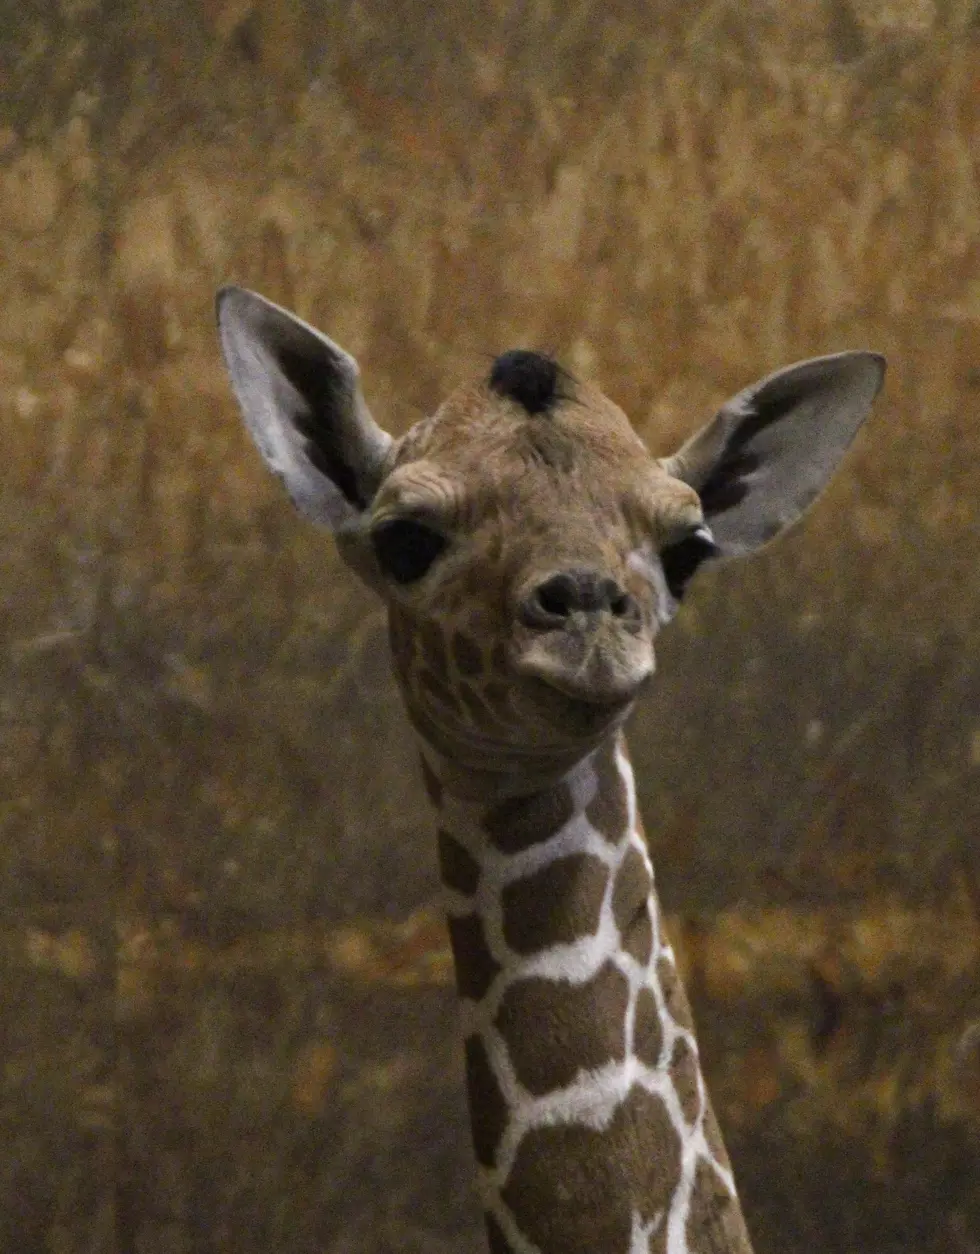 Makena The Giraffe Gives Birth at Binder Park Zoo